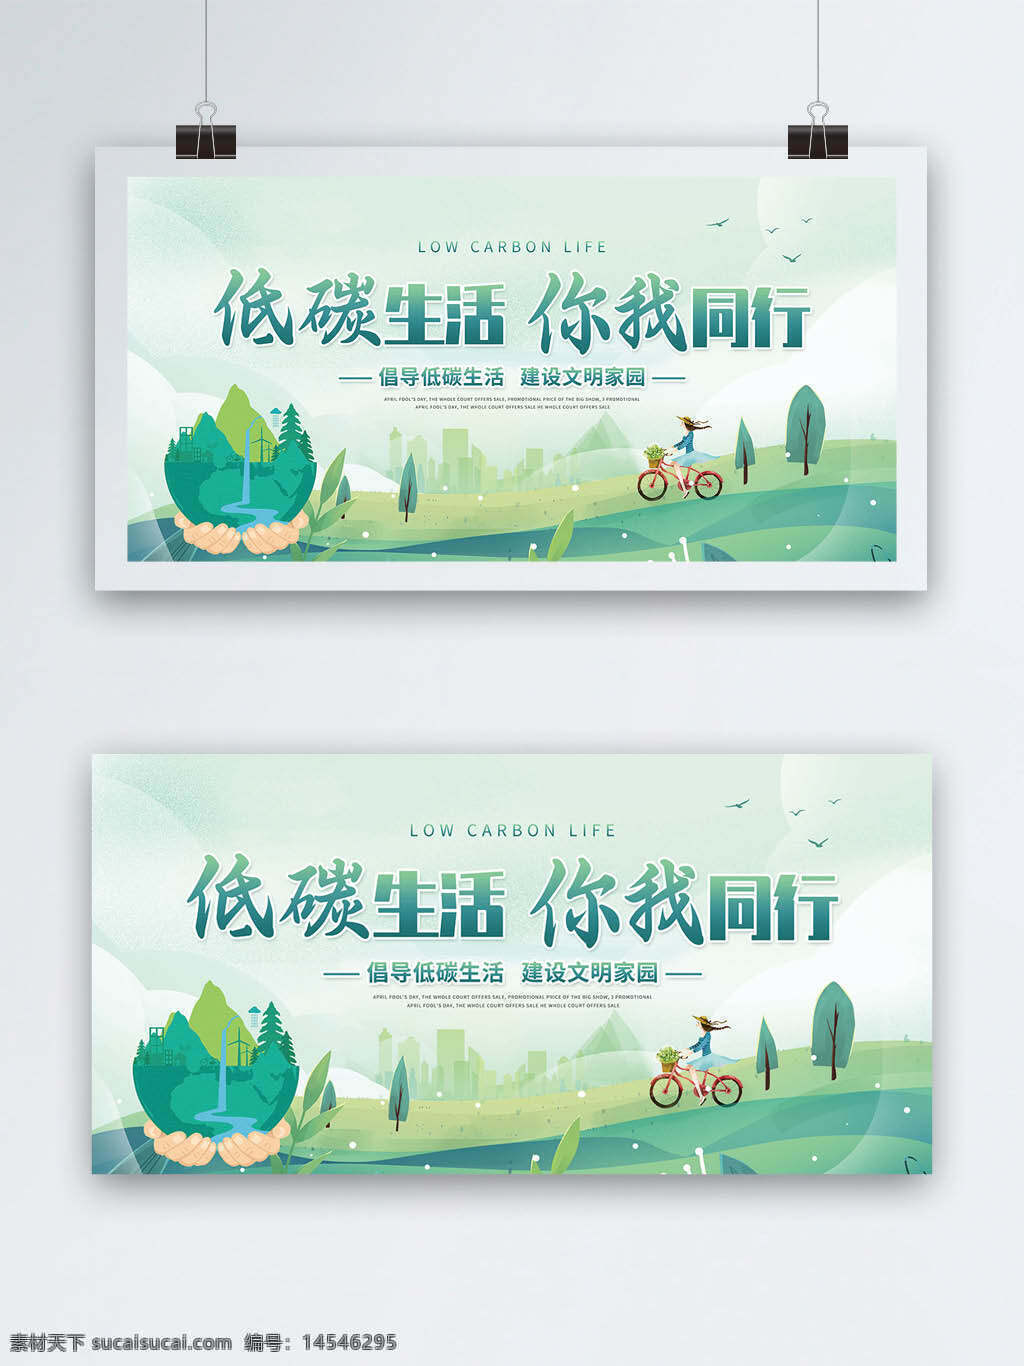 绿色出行 公益广告 低碳城市 骑行 低碳生活 环保 低碳环保 绿色环保 绿色城市 环保创意海报 生态环保 低碳出行